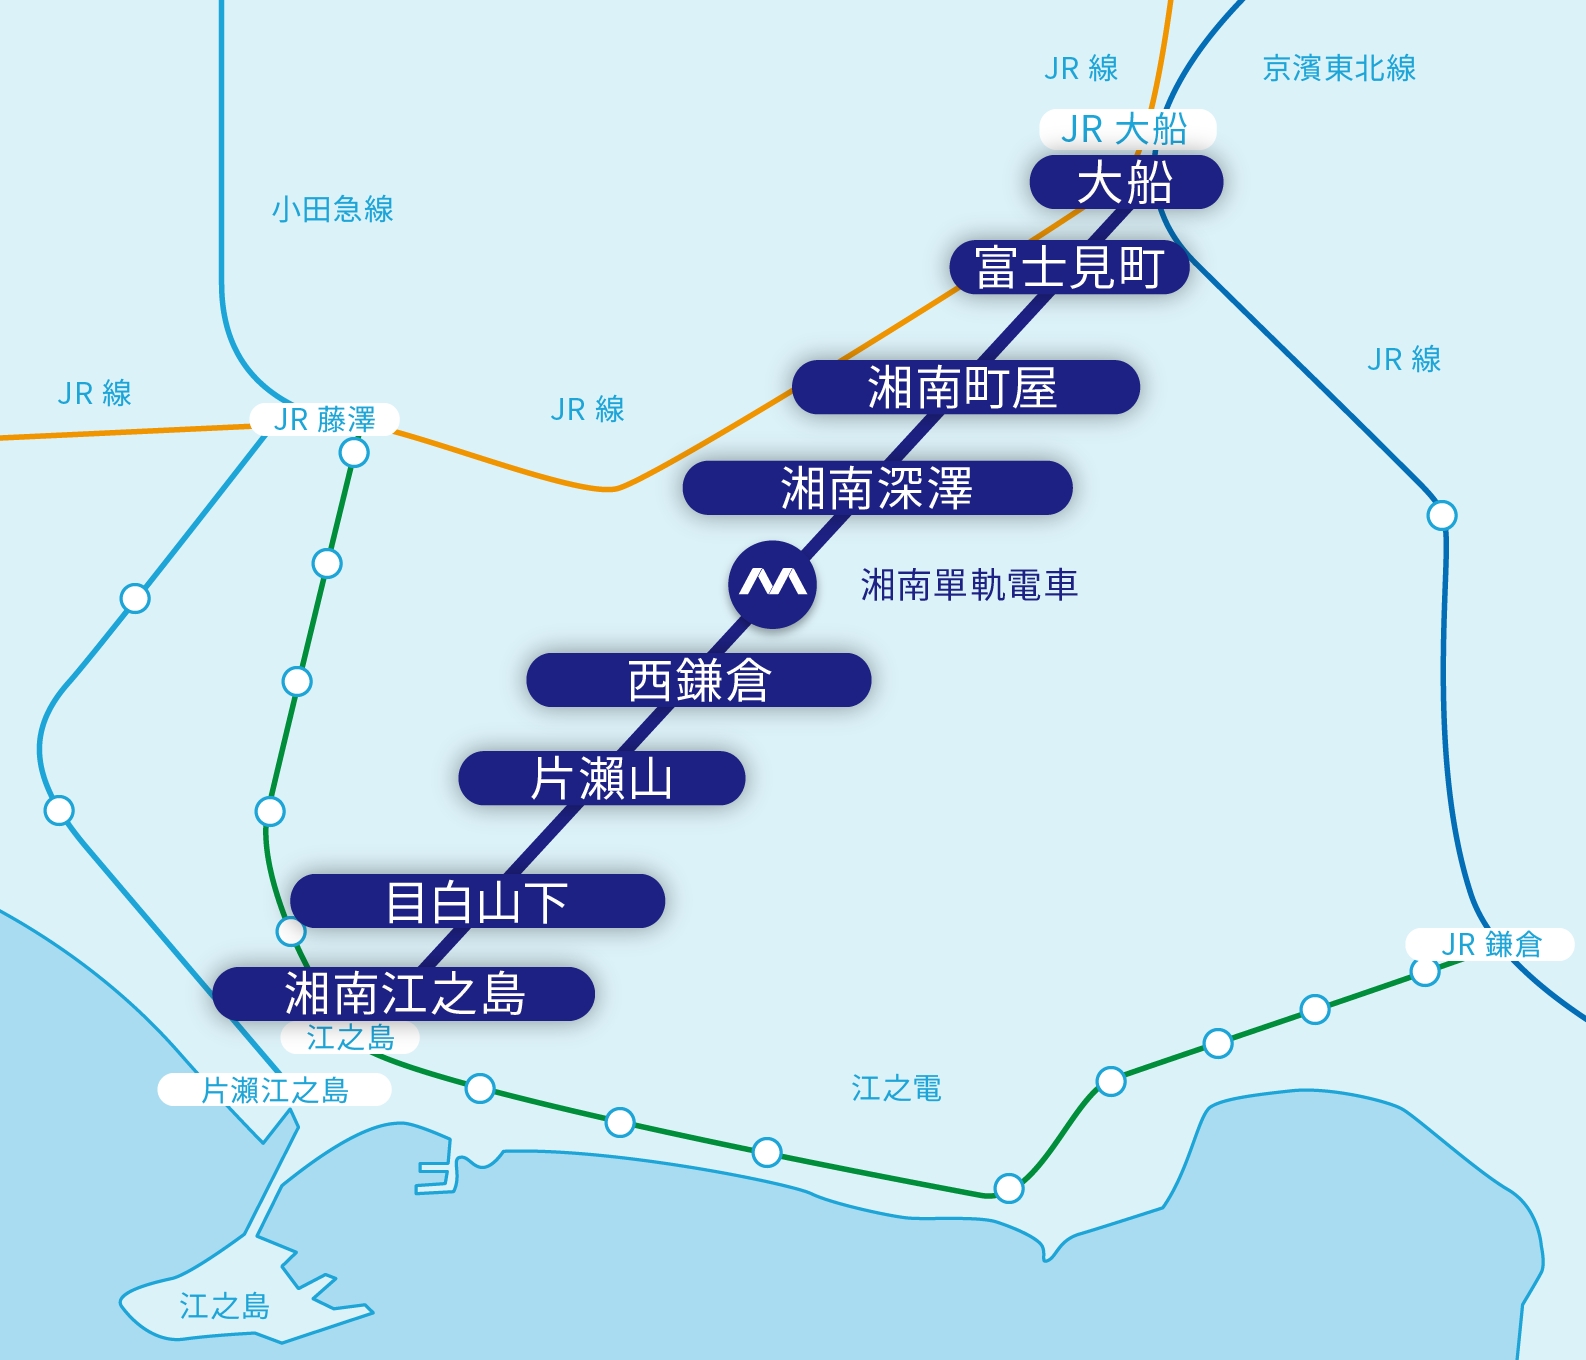 The fastest way to go Enoshima